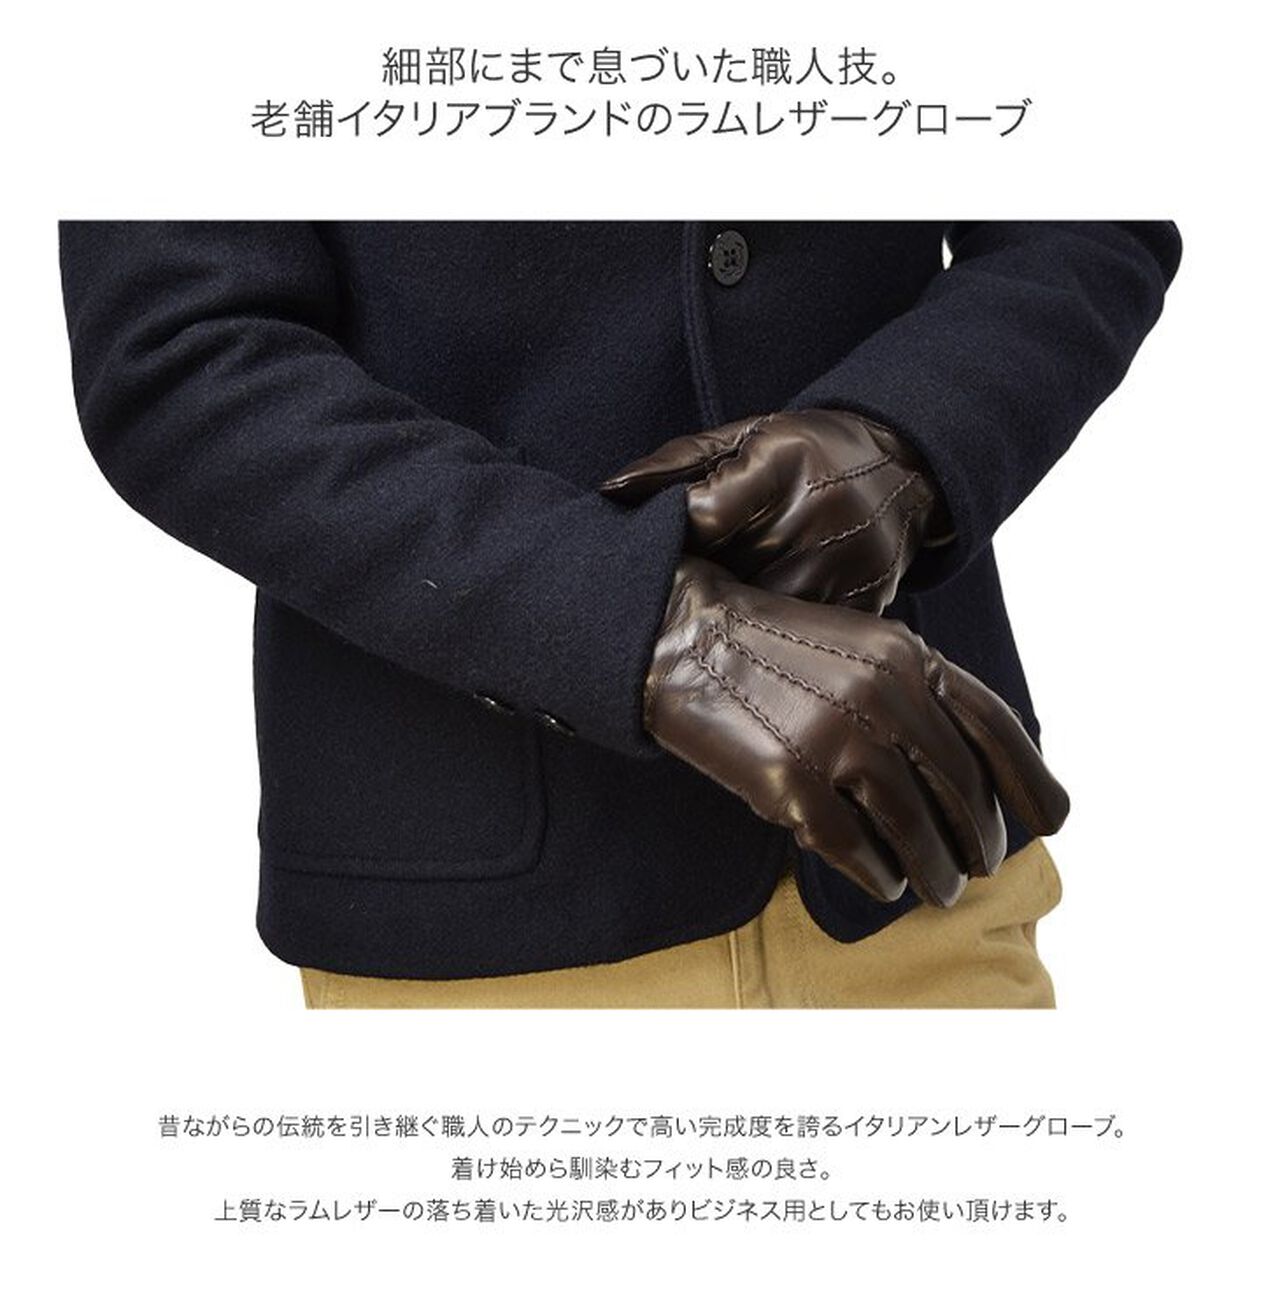 78PK-SM Smartphone Lamb Leather Gloves,Black, large image number 4